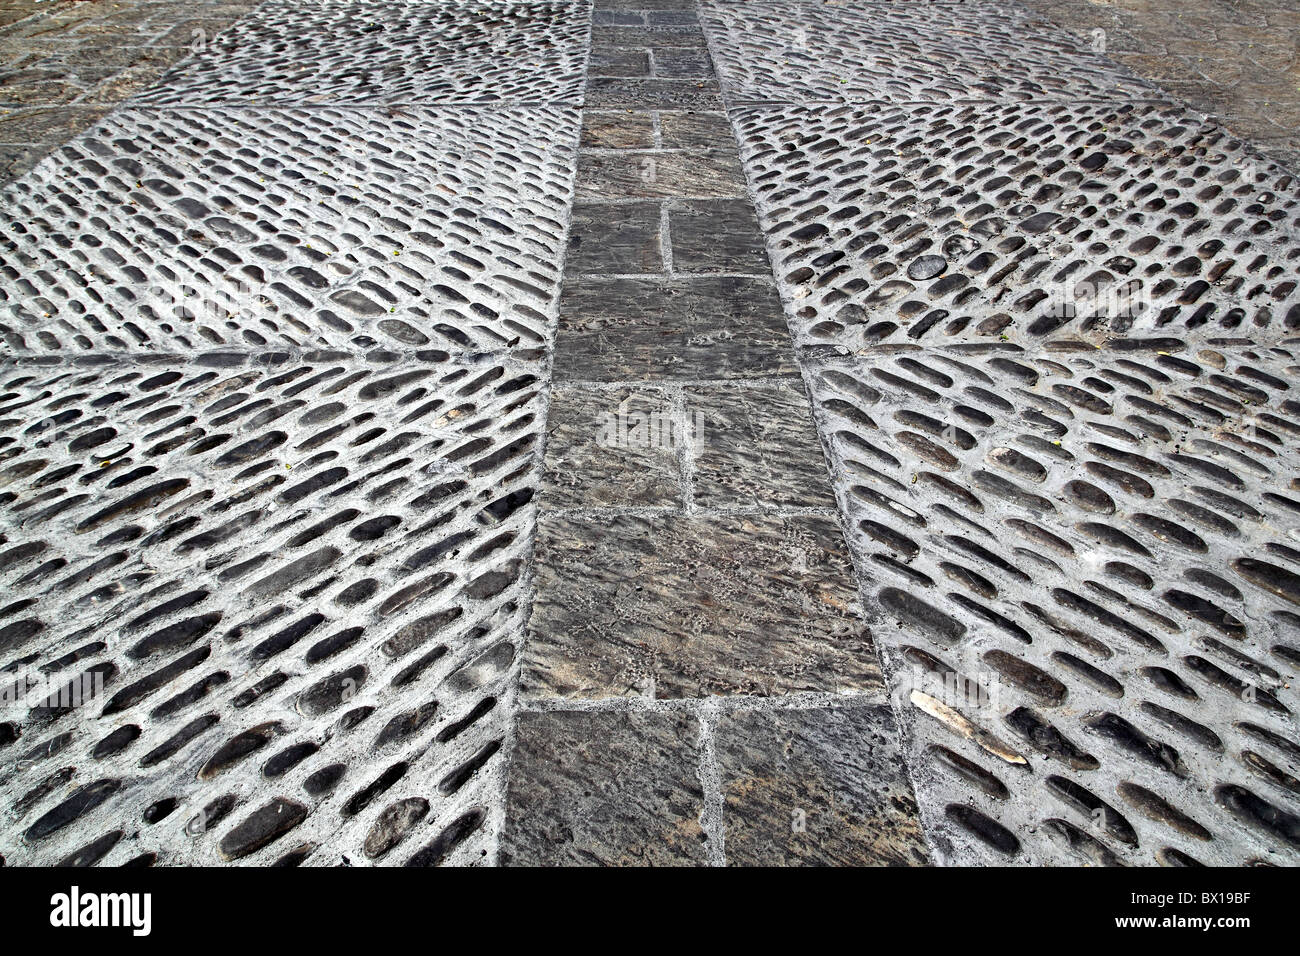 Mosaïque des rolling stones en marbre du sol médiéval Espagne Aragon Banque D'Images